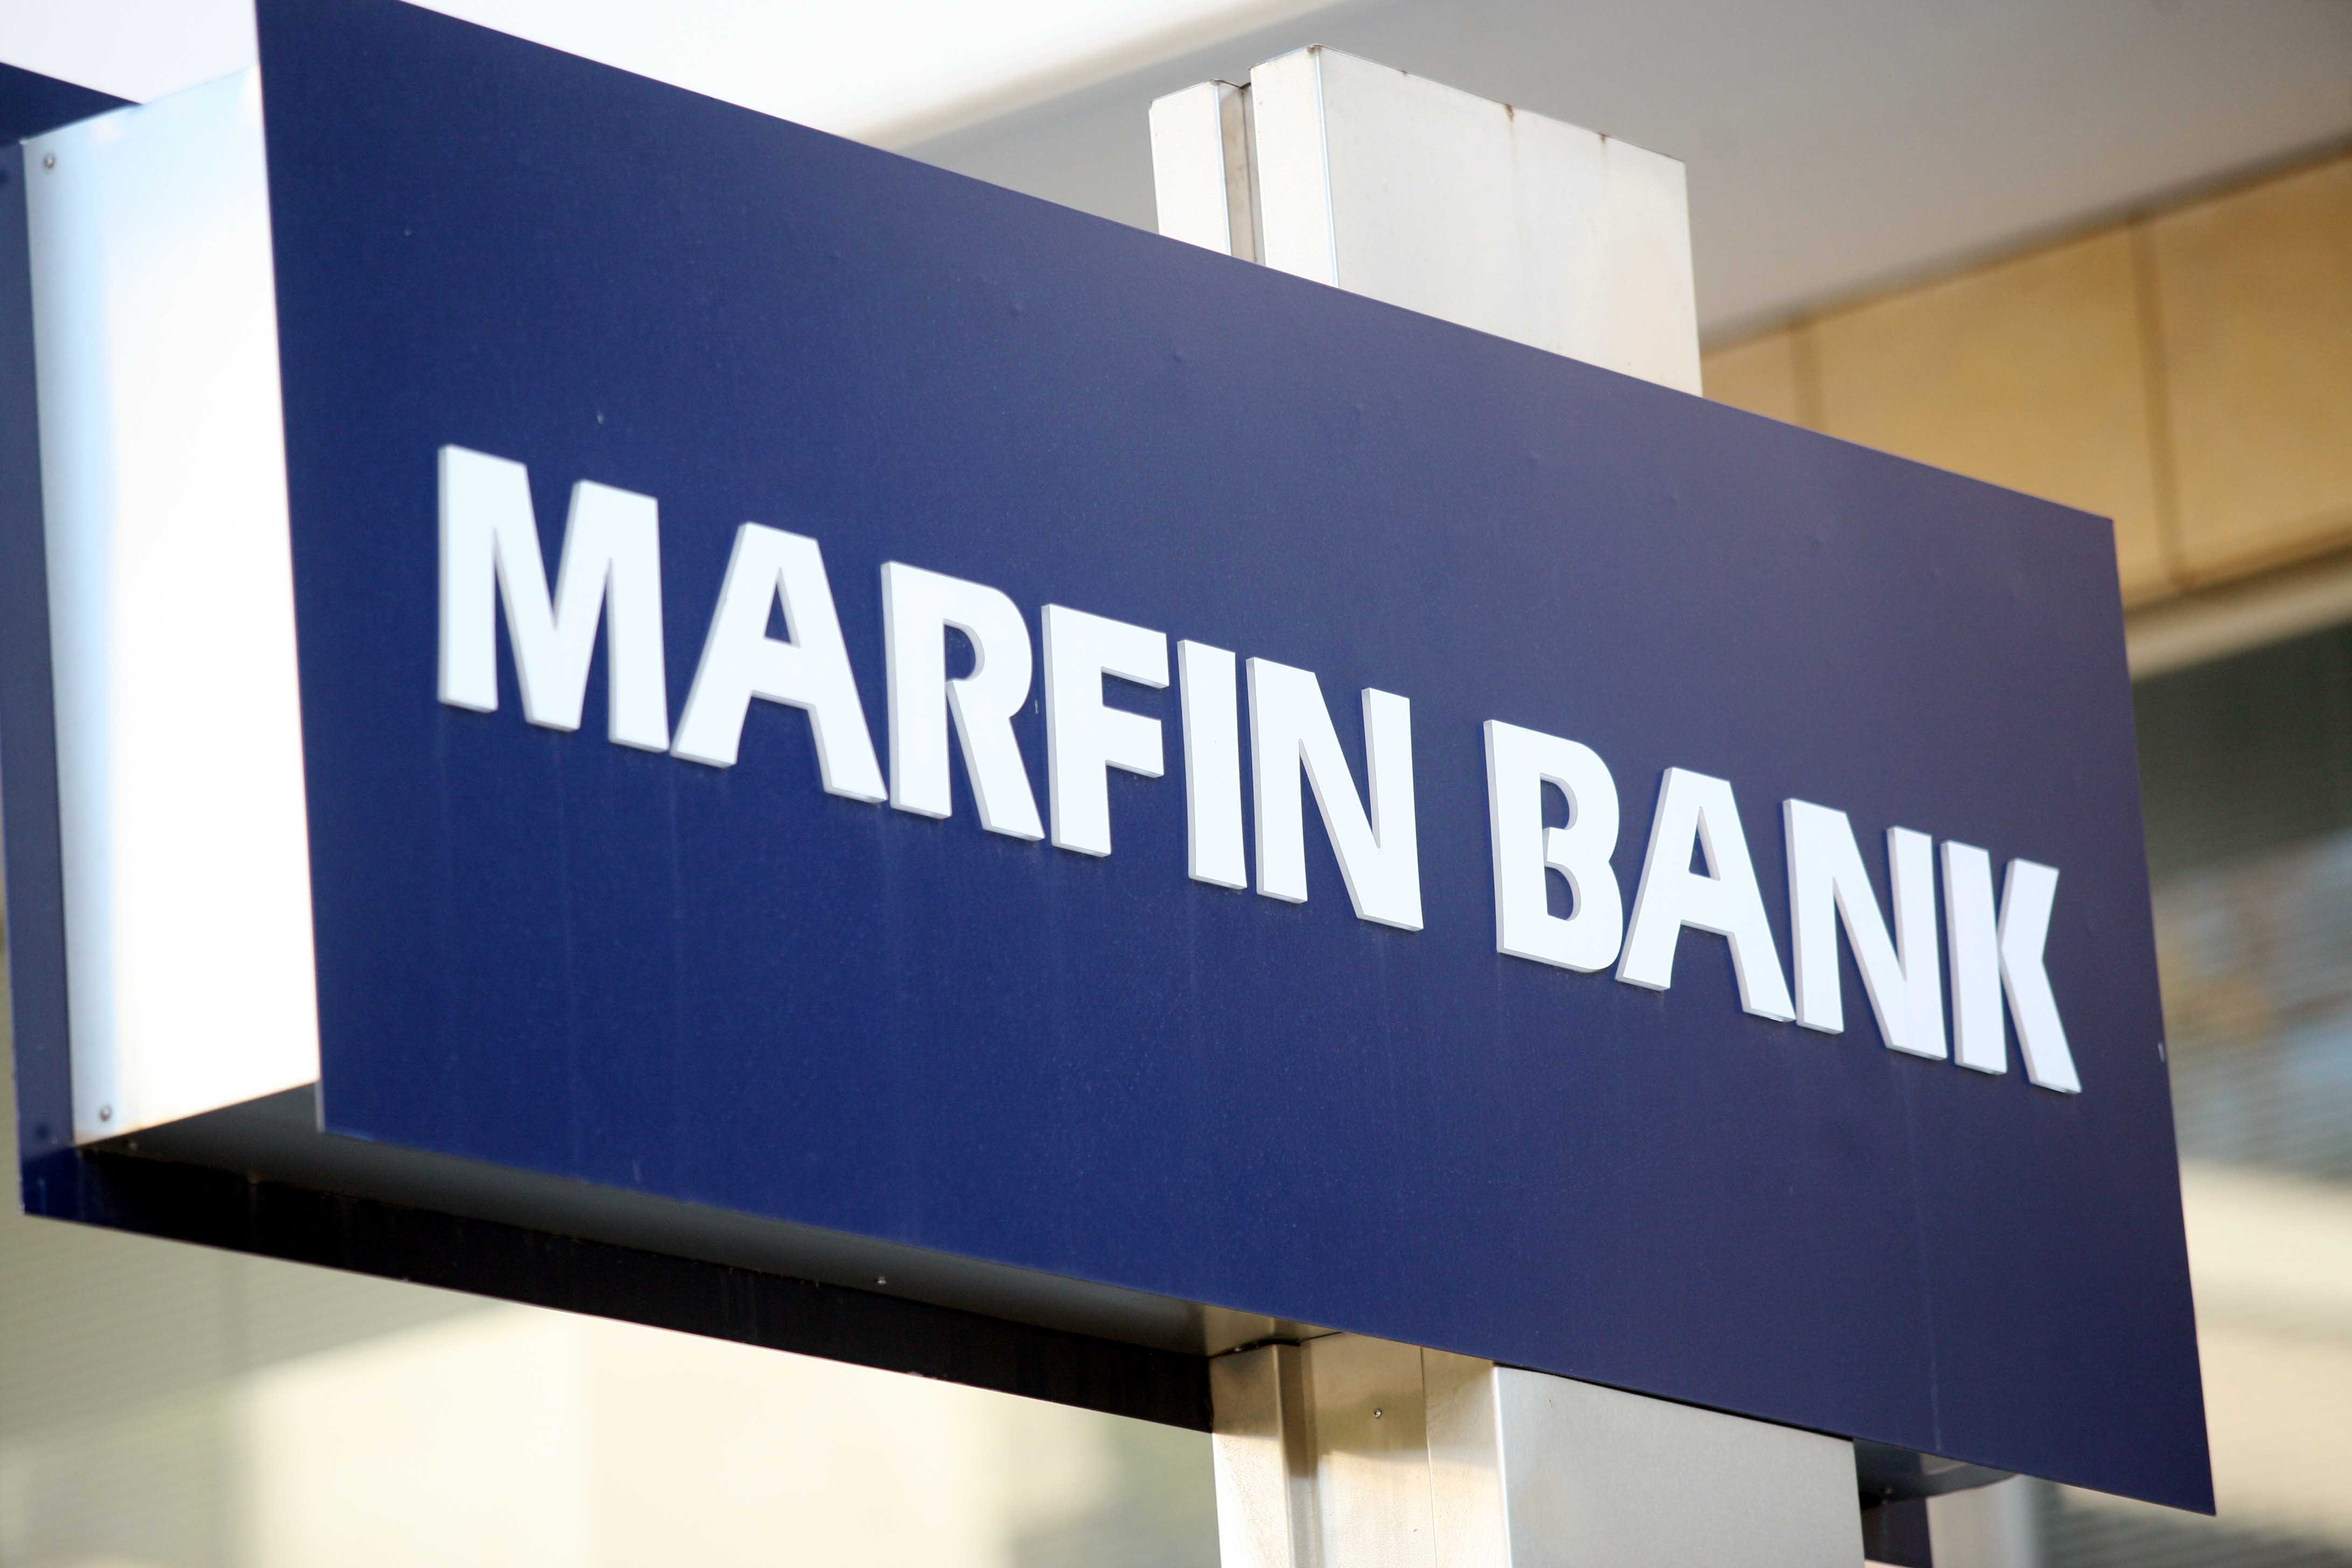 Marfin Popular Bank: Ζημιές 2,5 δισ. ευρώ  το 2011